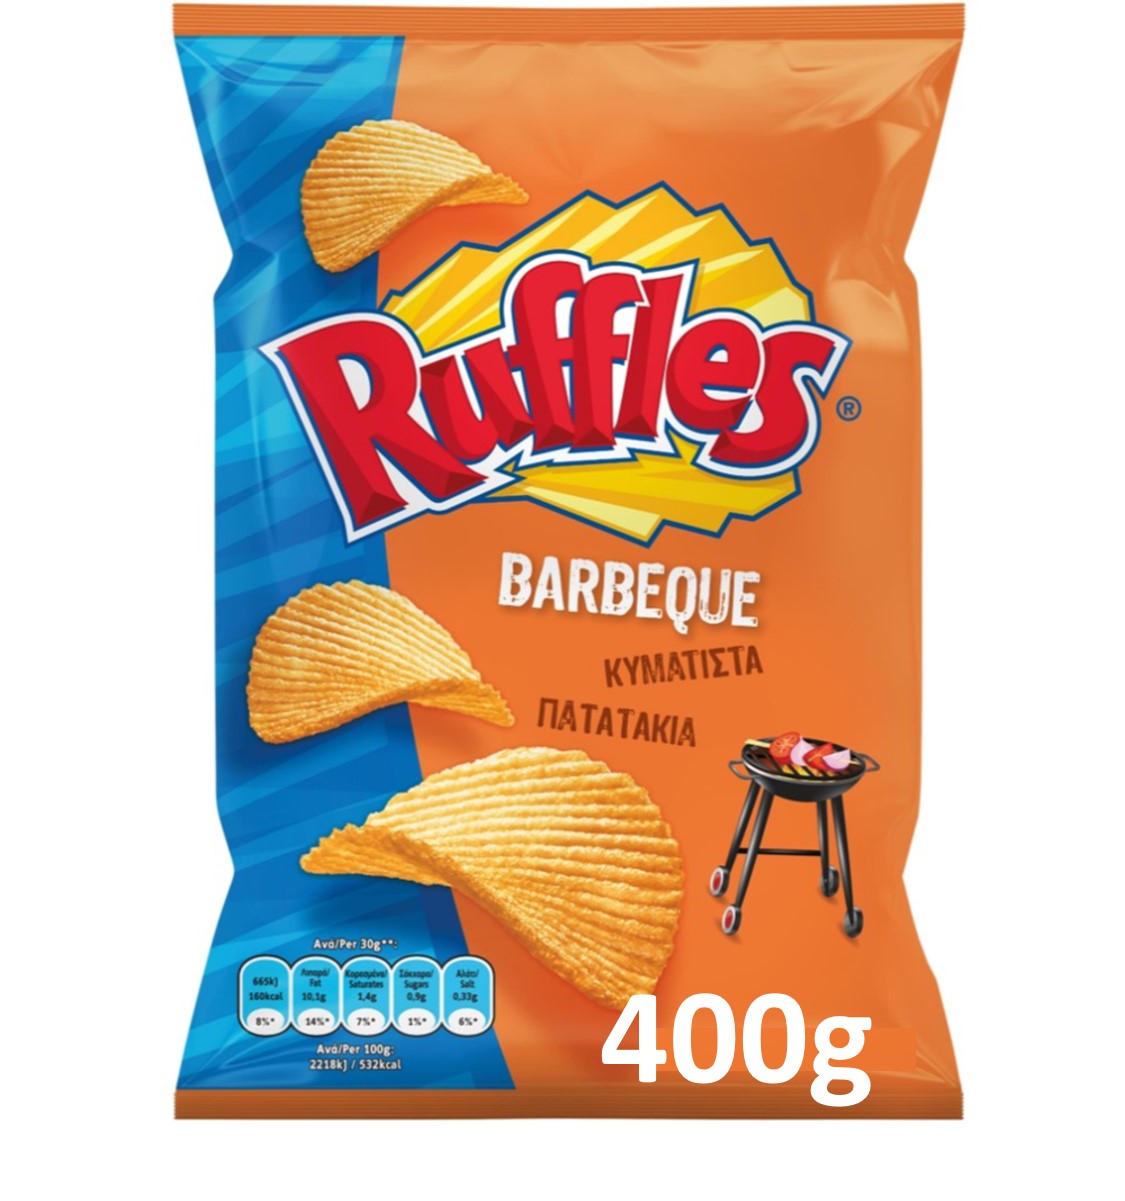 Κυματιστά πατατάκια Μπάρμπεκιου Ruffles (400 g)